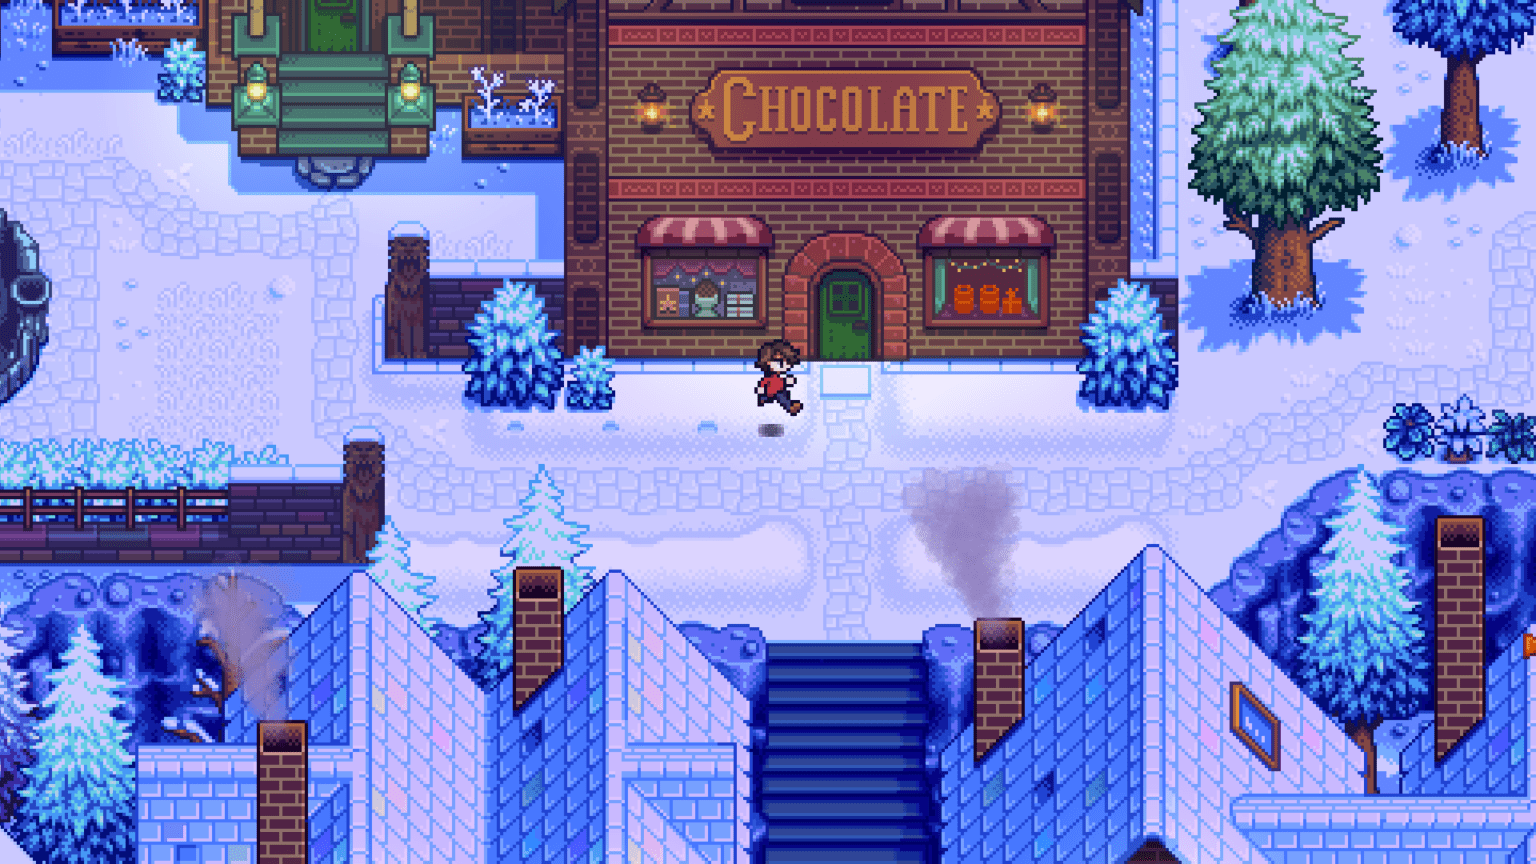 Une capture d'écran du jeu Haunted Chocolatier : un petit héros en pixel art entre dans un magasin de chocolat.